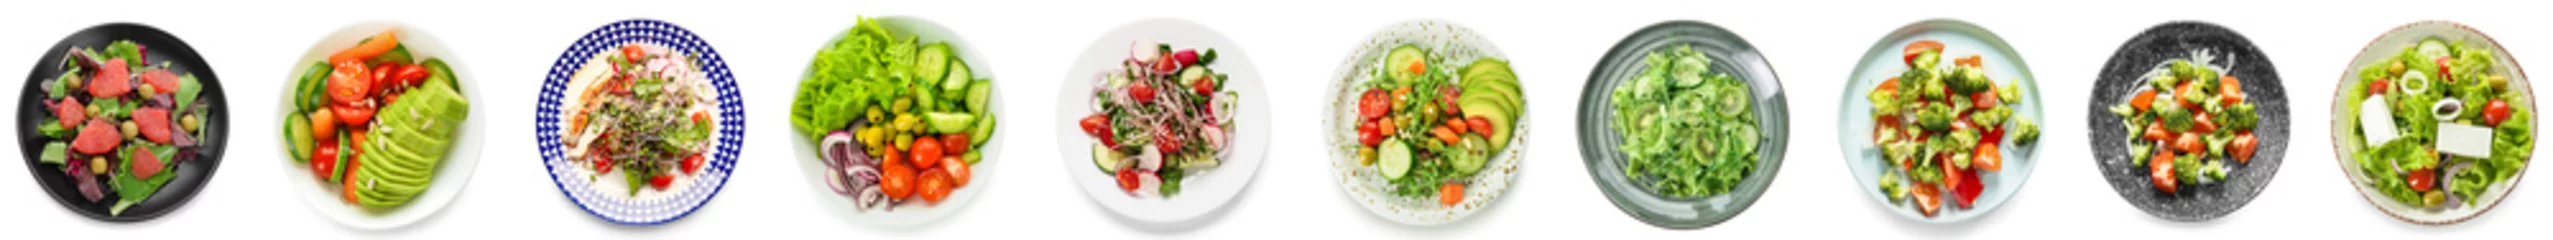 Deurstickers Verse groenten Set van smakelijke salades met groenten op witte achtergrond, bovenaanzicht